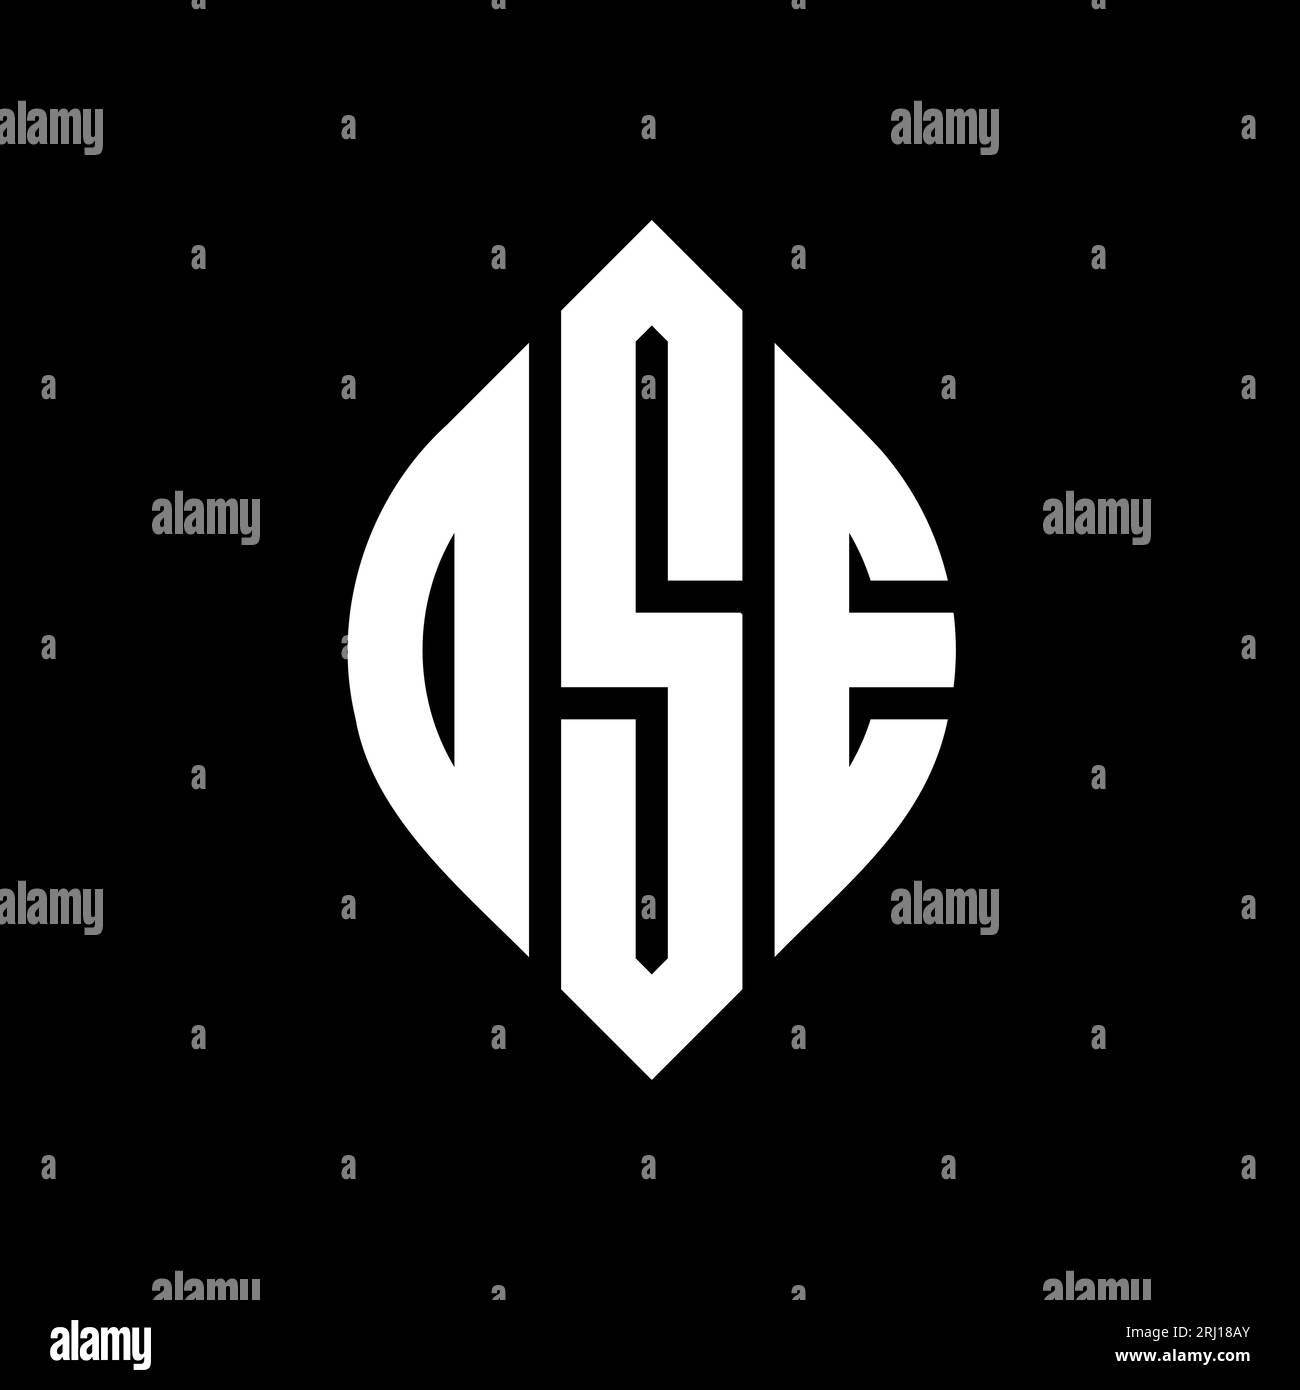 DSE-Logo mit kreisförmigem Buchstaben und Ellipsenform. DSE-Ellipsenbuchstaben im typografischen Stil. Die drei Initialen bilden ein kreisförmiges Logo. DSE-CI Stock Vektor